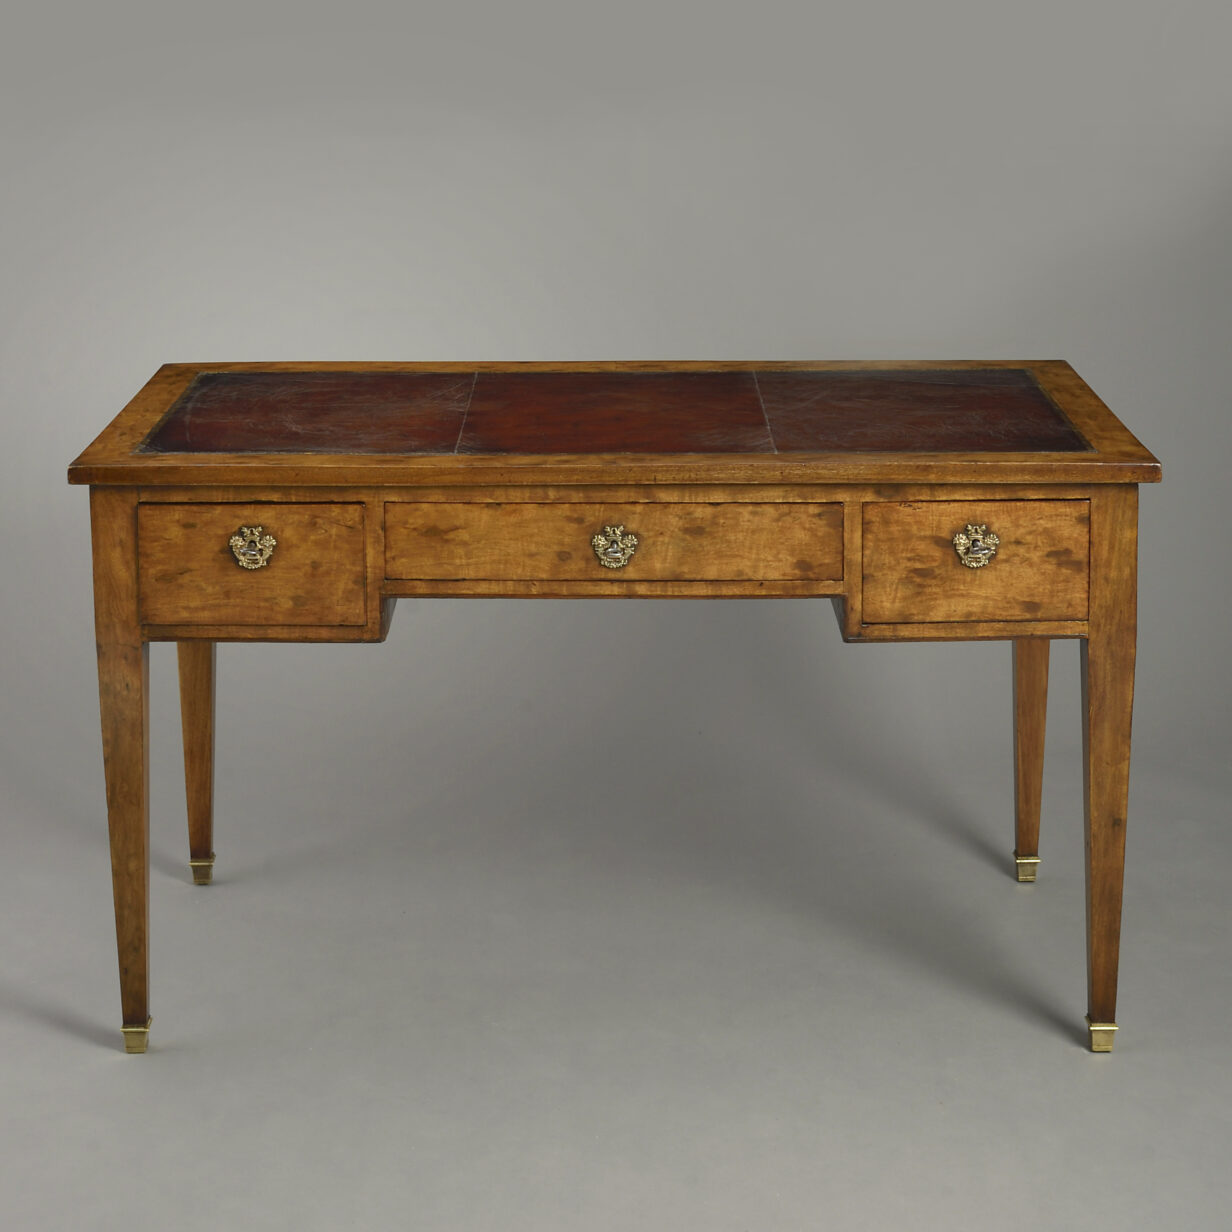 Early 19th century empire period mahogany bureau plat